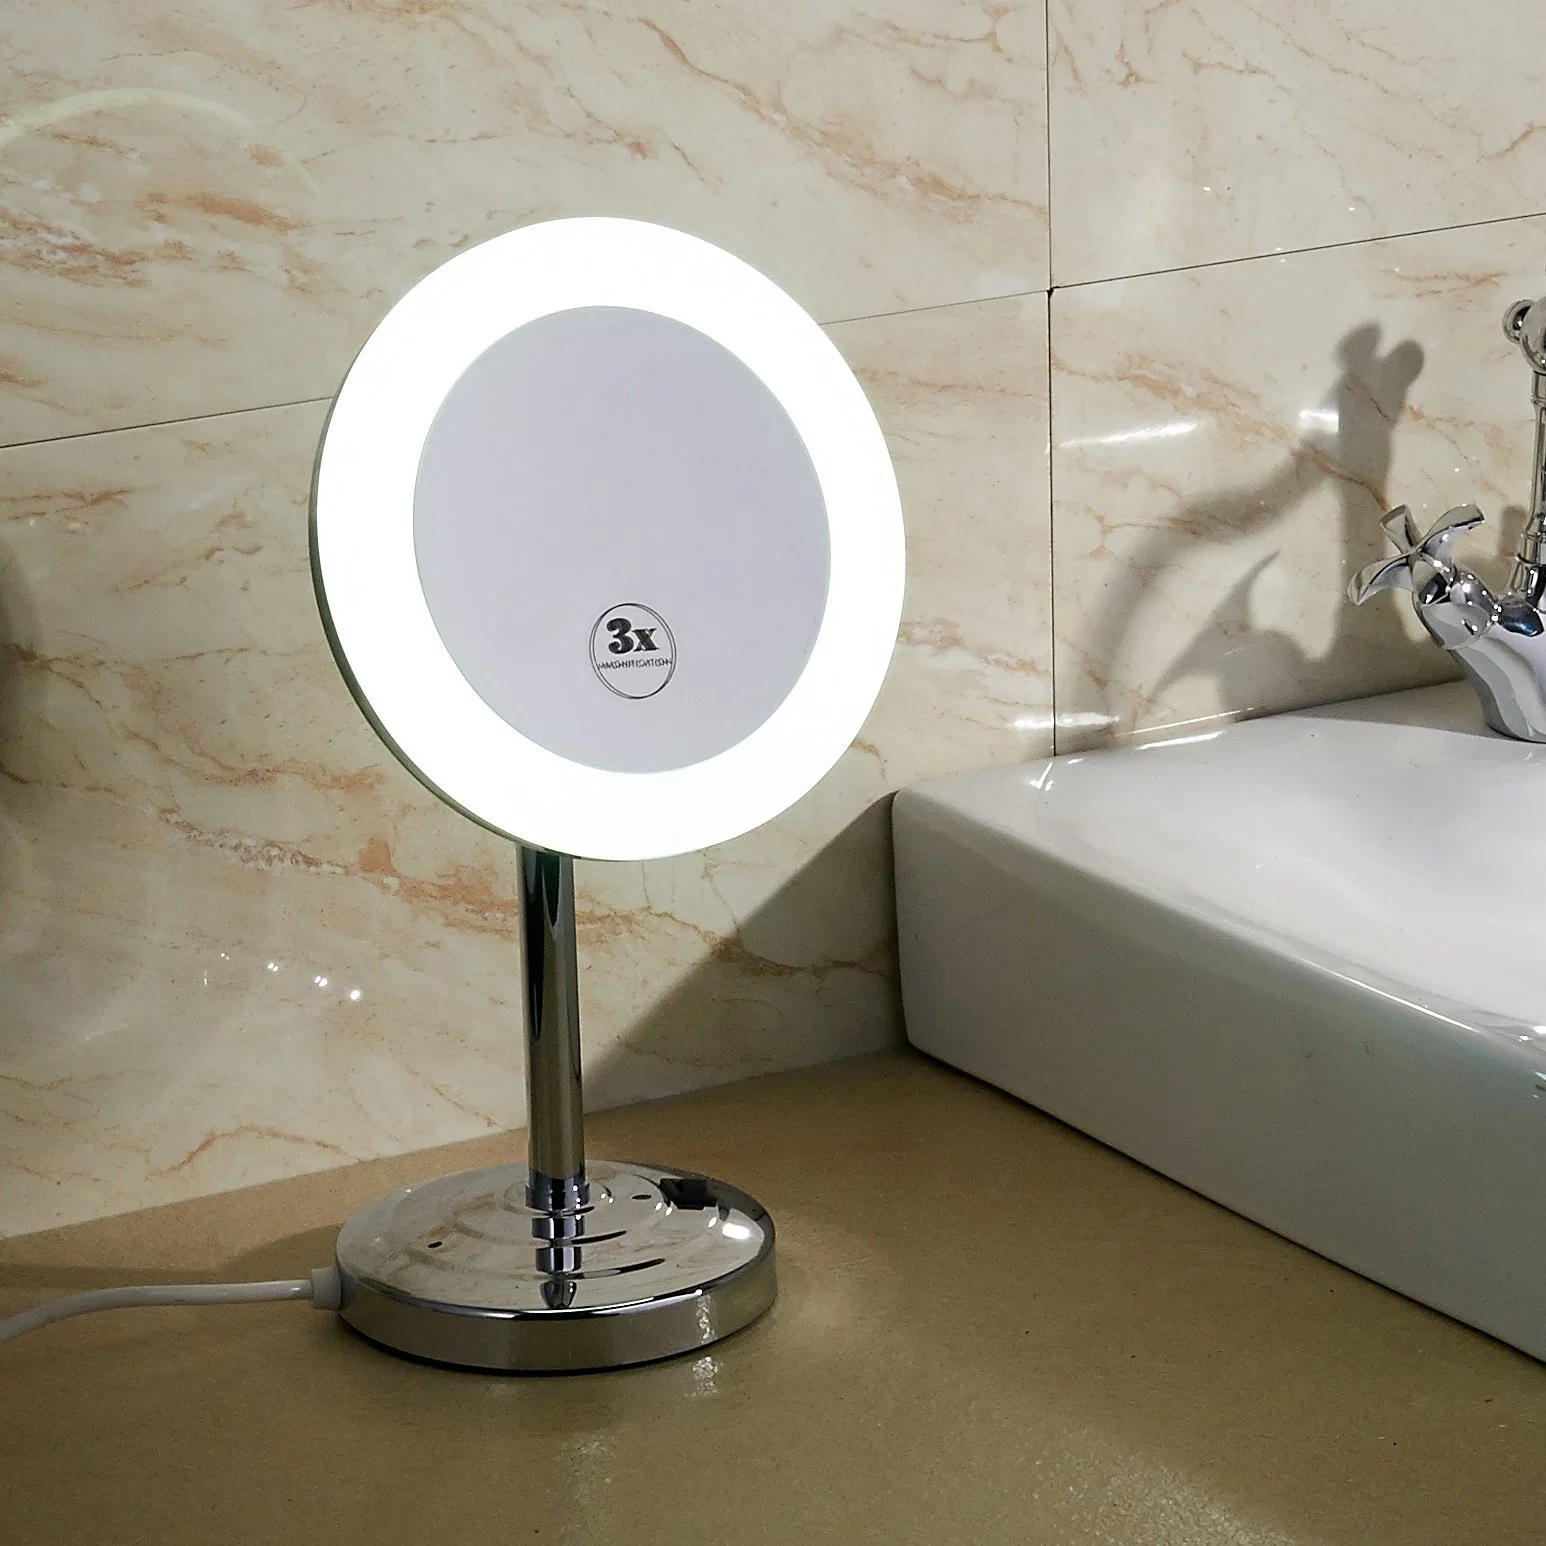 Maquilhagem com suporte LED 3X em estilo cromado de bacia do banheiro, ampliador de 8 polegadas Espelho